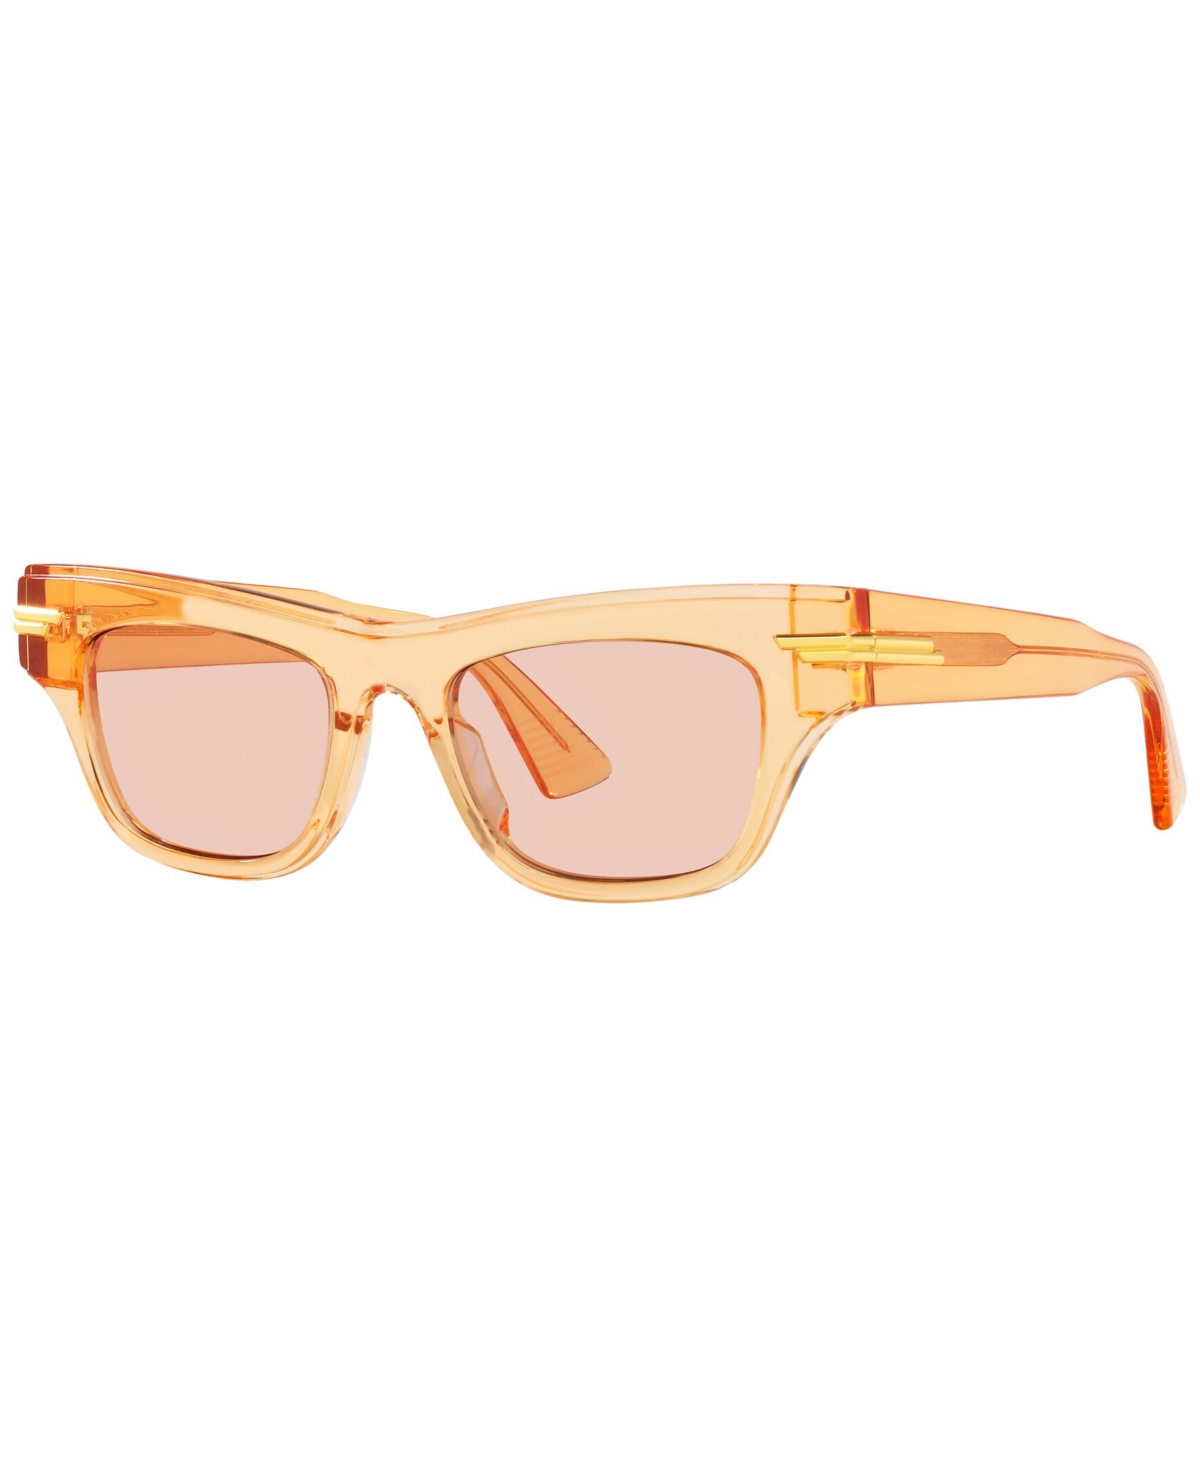 Bottega Veneta Women's Sunglasses, Bv1122s In Orange